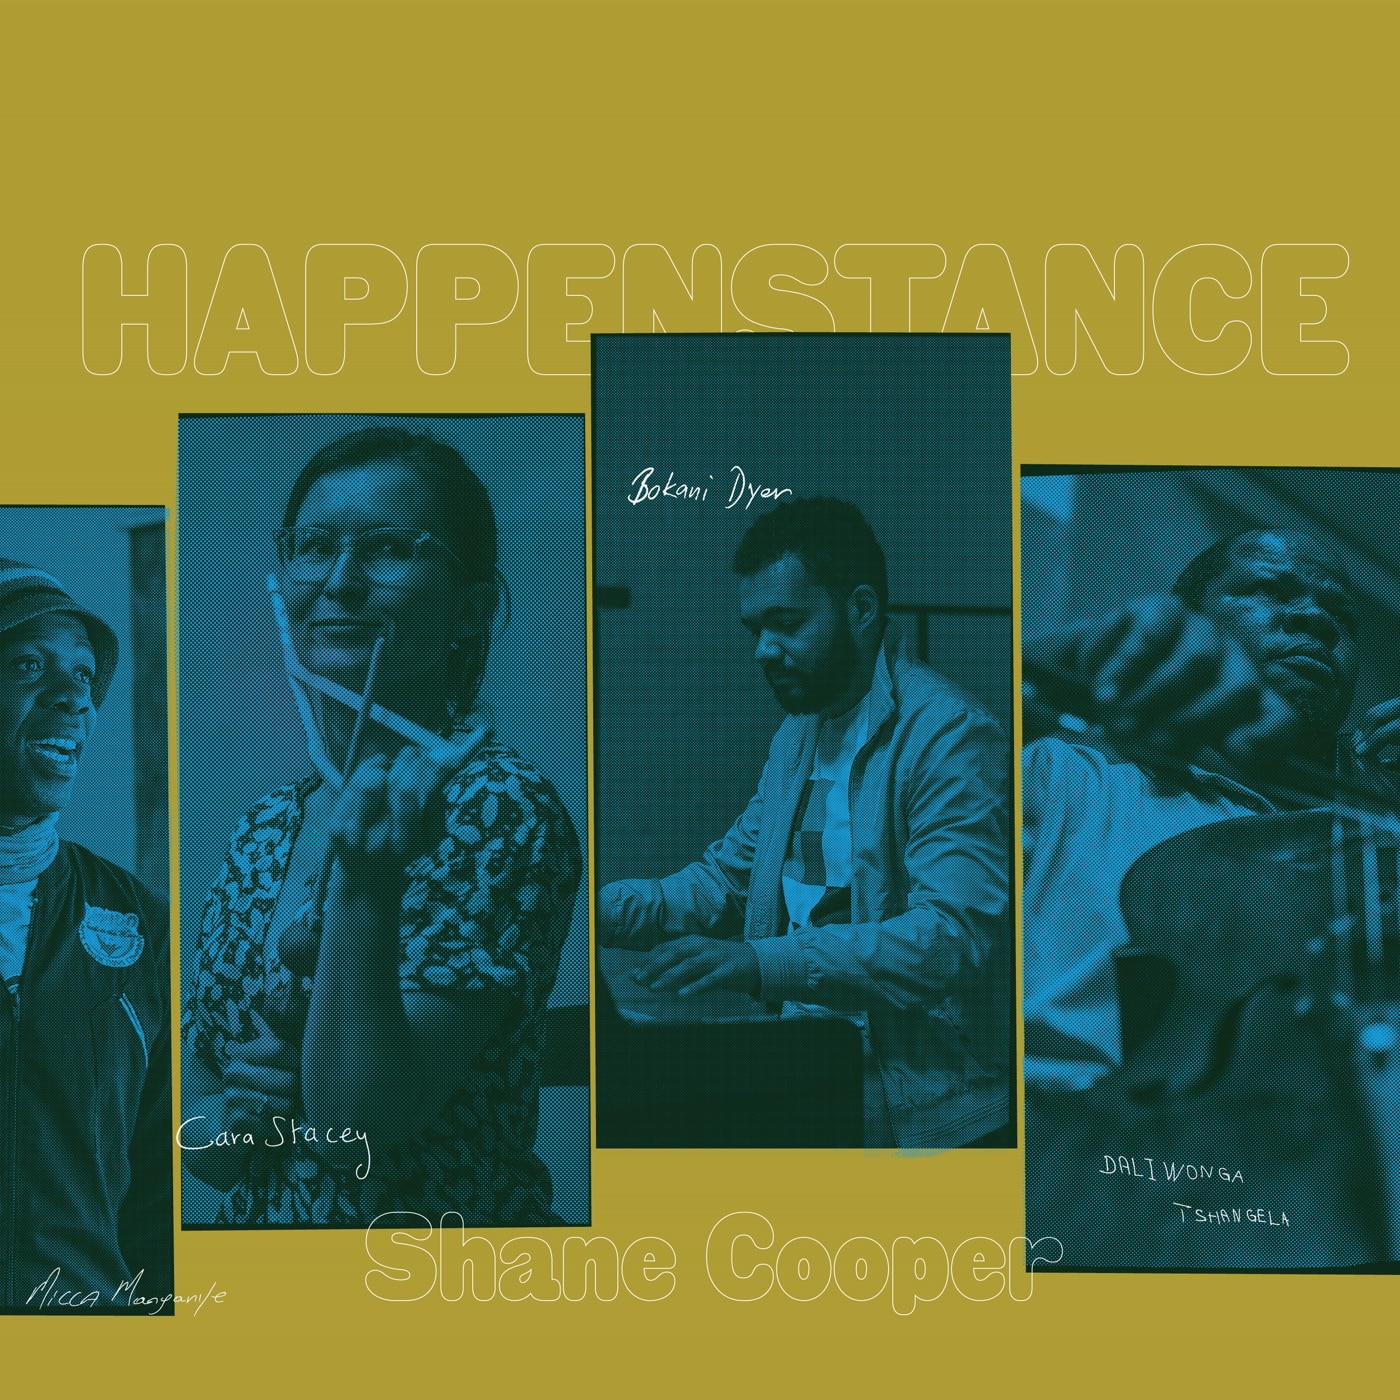 Shane Cooper - HAPPENSTANCE - KR42 - KIT RECORDS